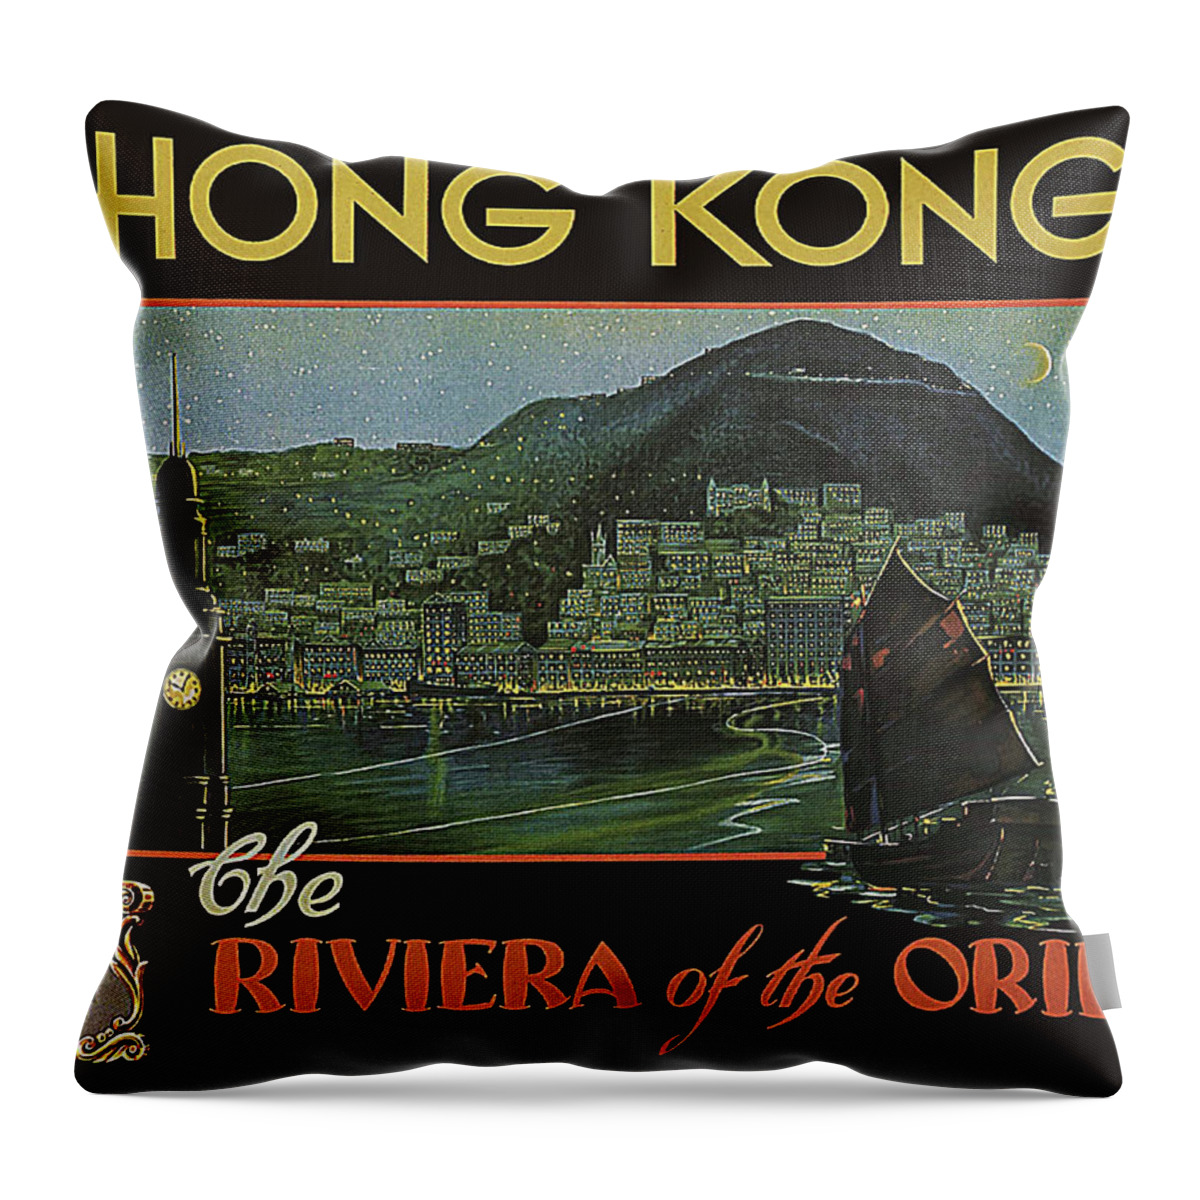 Hong Kong Throw Pillow featuring the painting Hong Kong, city harbor by Long Shot